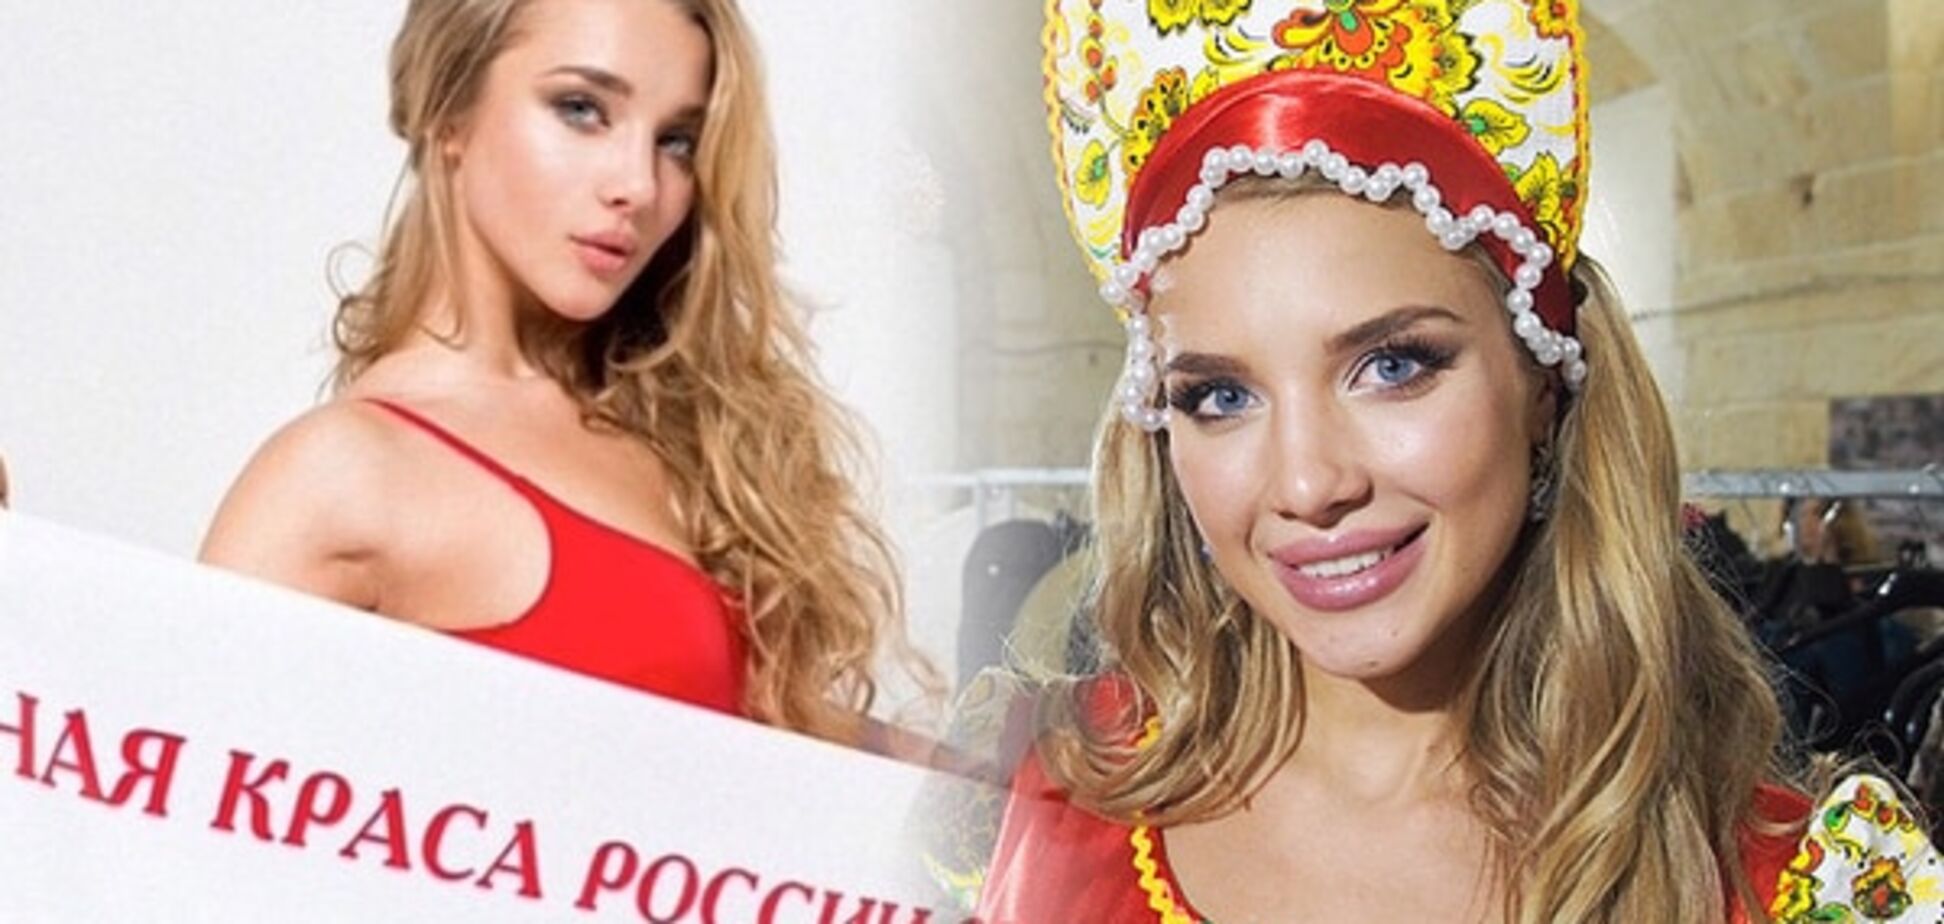 Українка, яка представляла Росію на світовому конкурсі краси: це було для мене справжнім пеклом